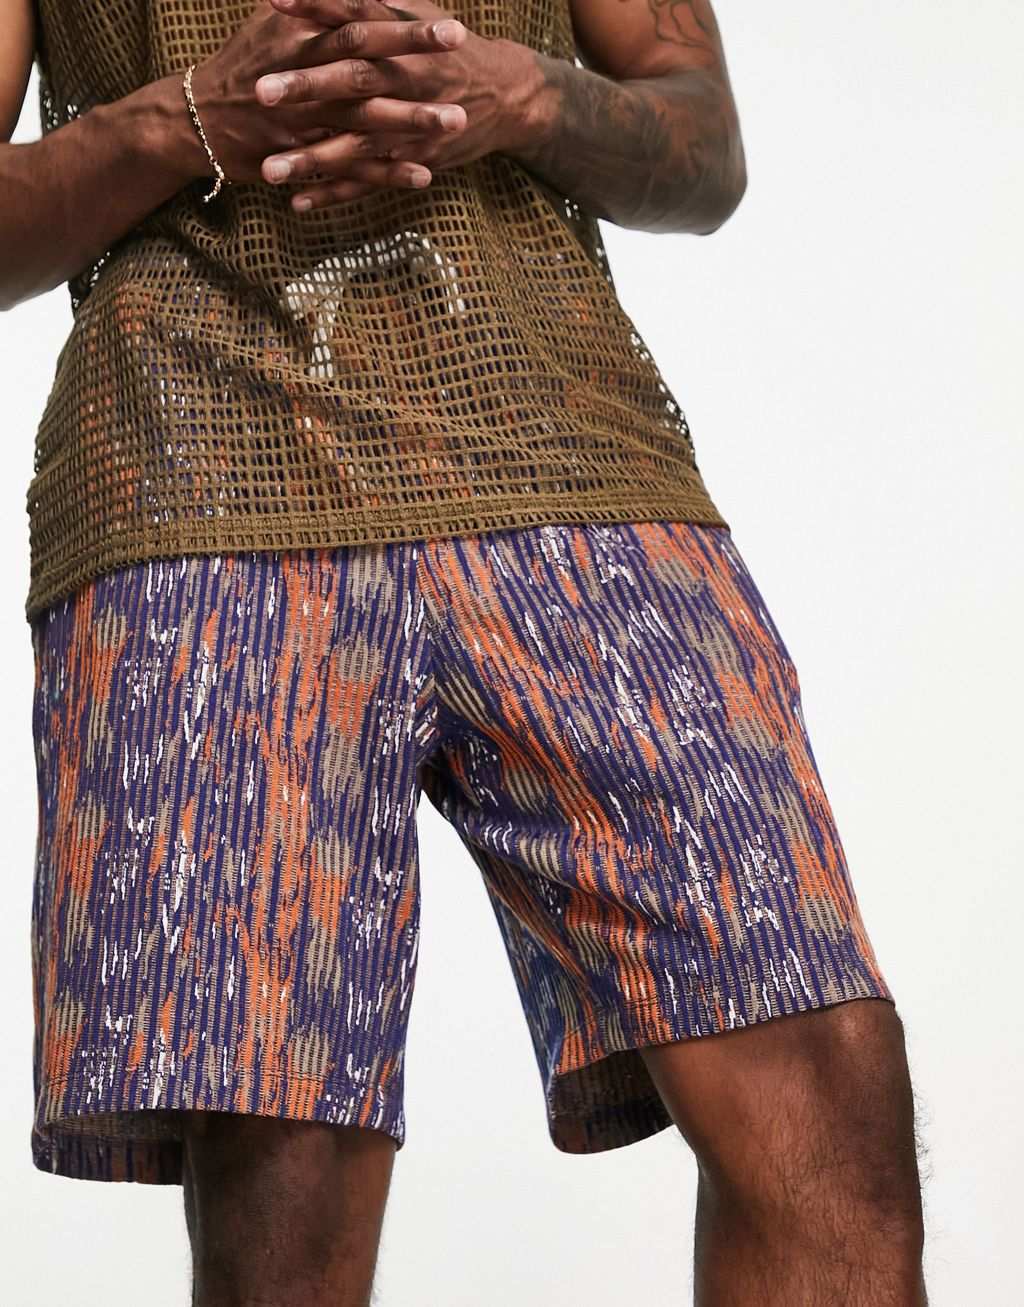 Текстурированные шорты оверсайз с разноцветными принтами ASOS DESIGN коричневые шорты оверсайз с принтами asos